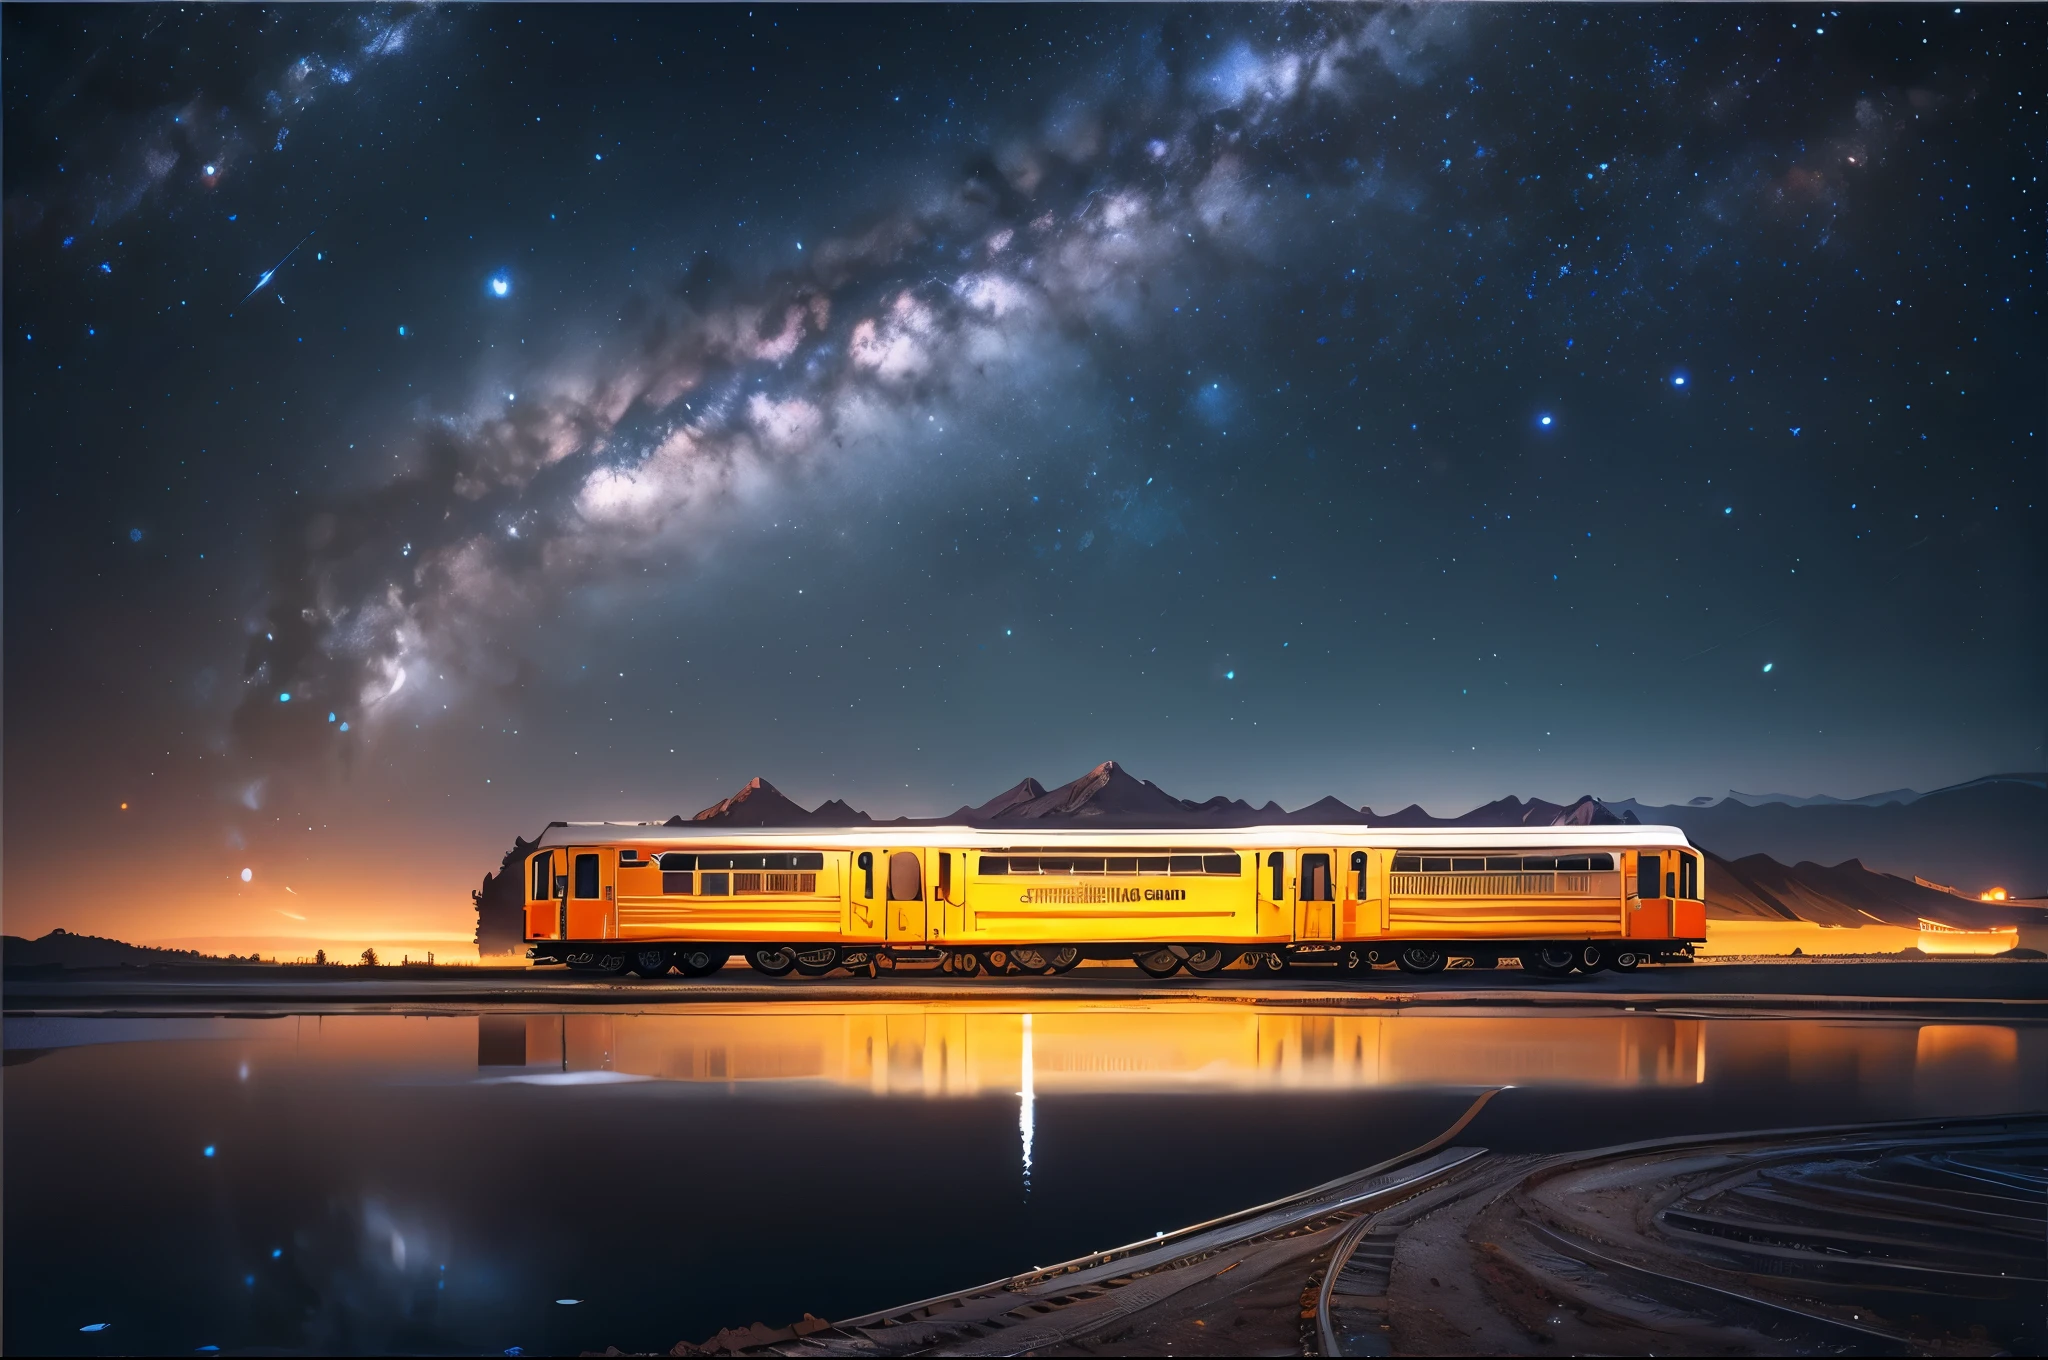 /我晚上, 火车在广阔的盐湖上行驶, 反映火车, 银河和星空. 正面和侧面视图, 高清, 摄影风格, 广角镜头角度, 对称构图, 自然光, 壮观的景色
